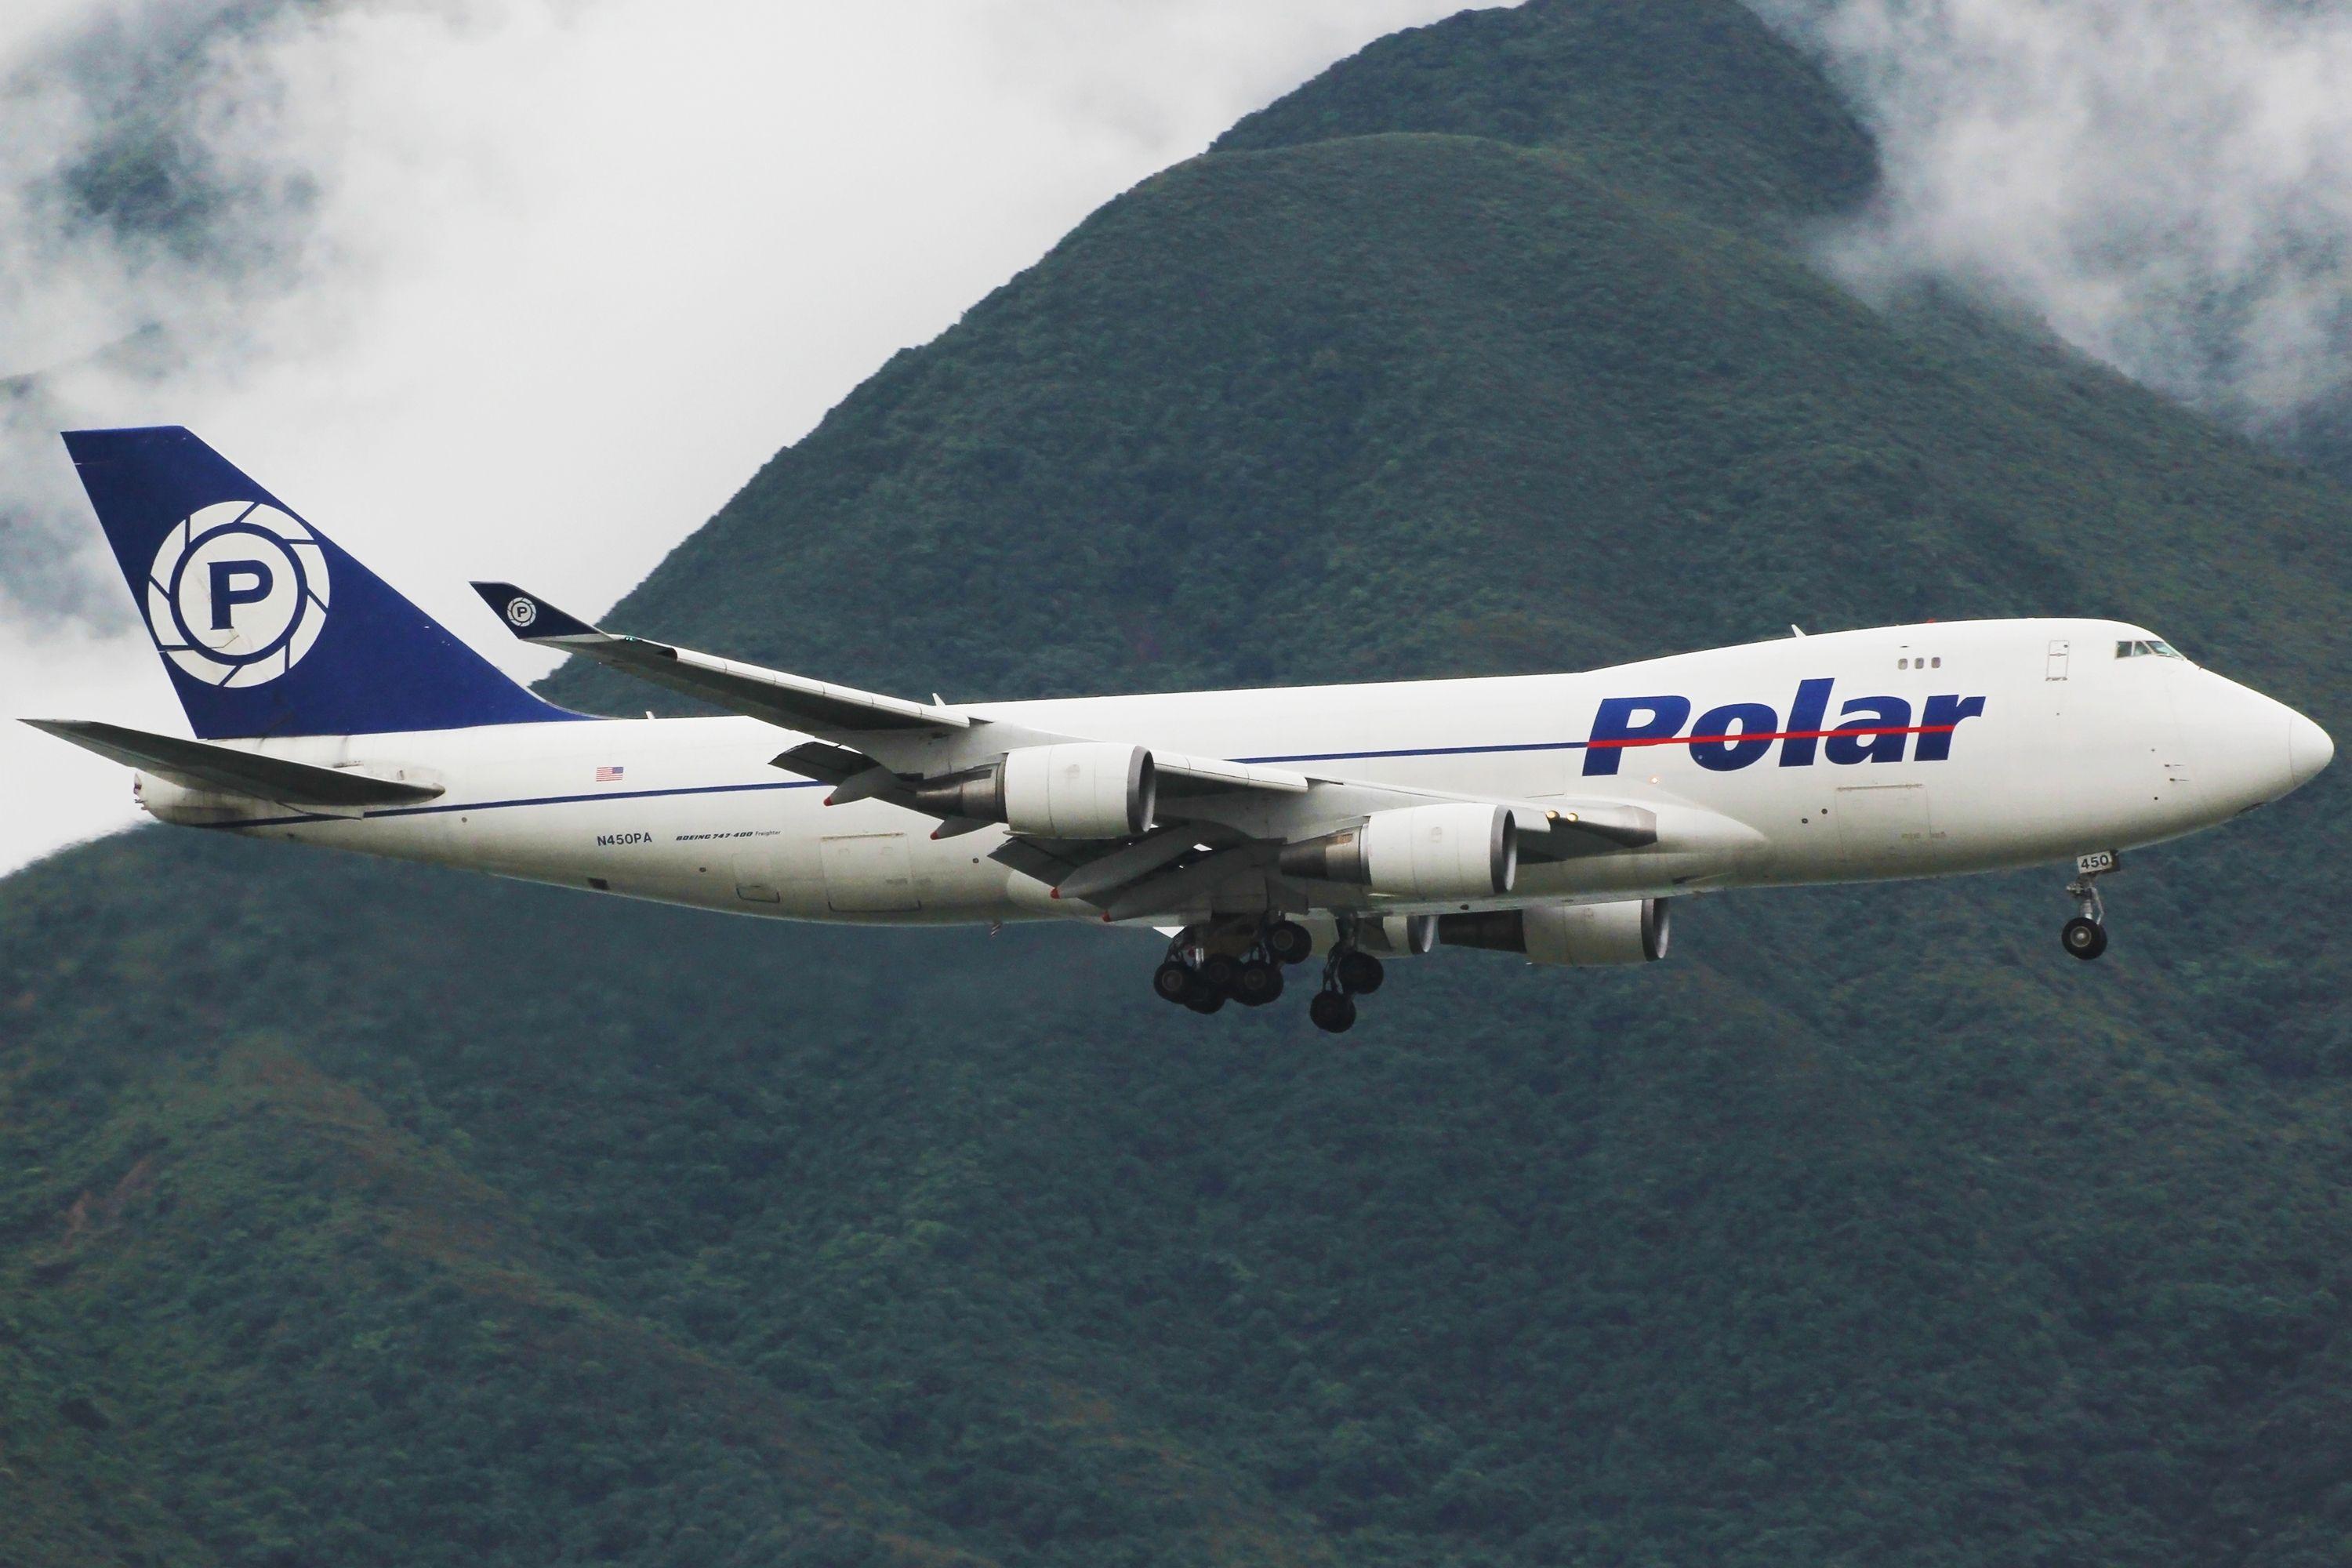 Polar Air Cargo Logo - File:Polar Air Cargo Boeing 747-46NF(SCD) N450PA.jpg - Wikimedia Commons